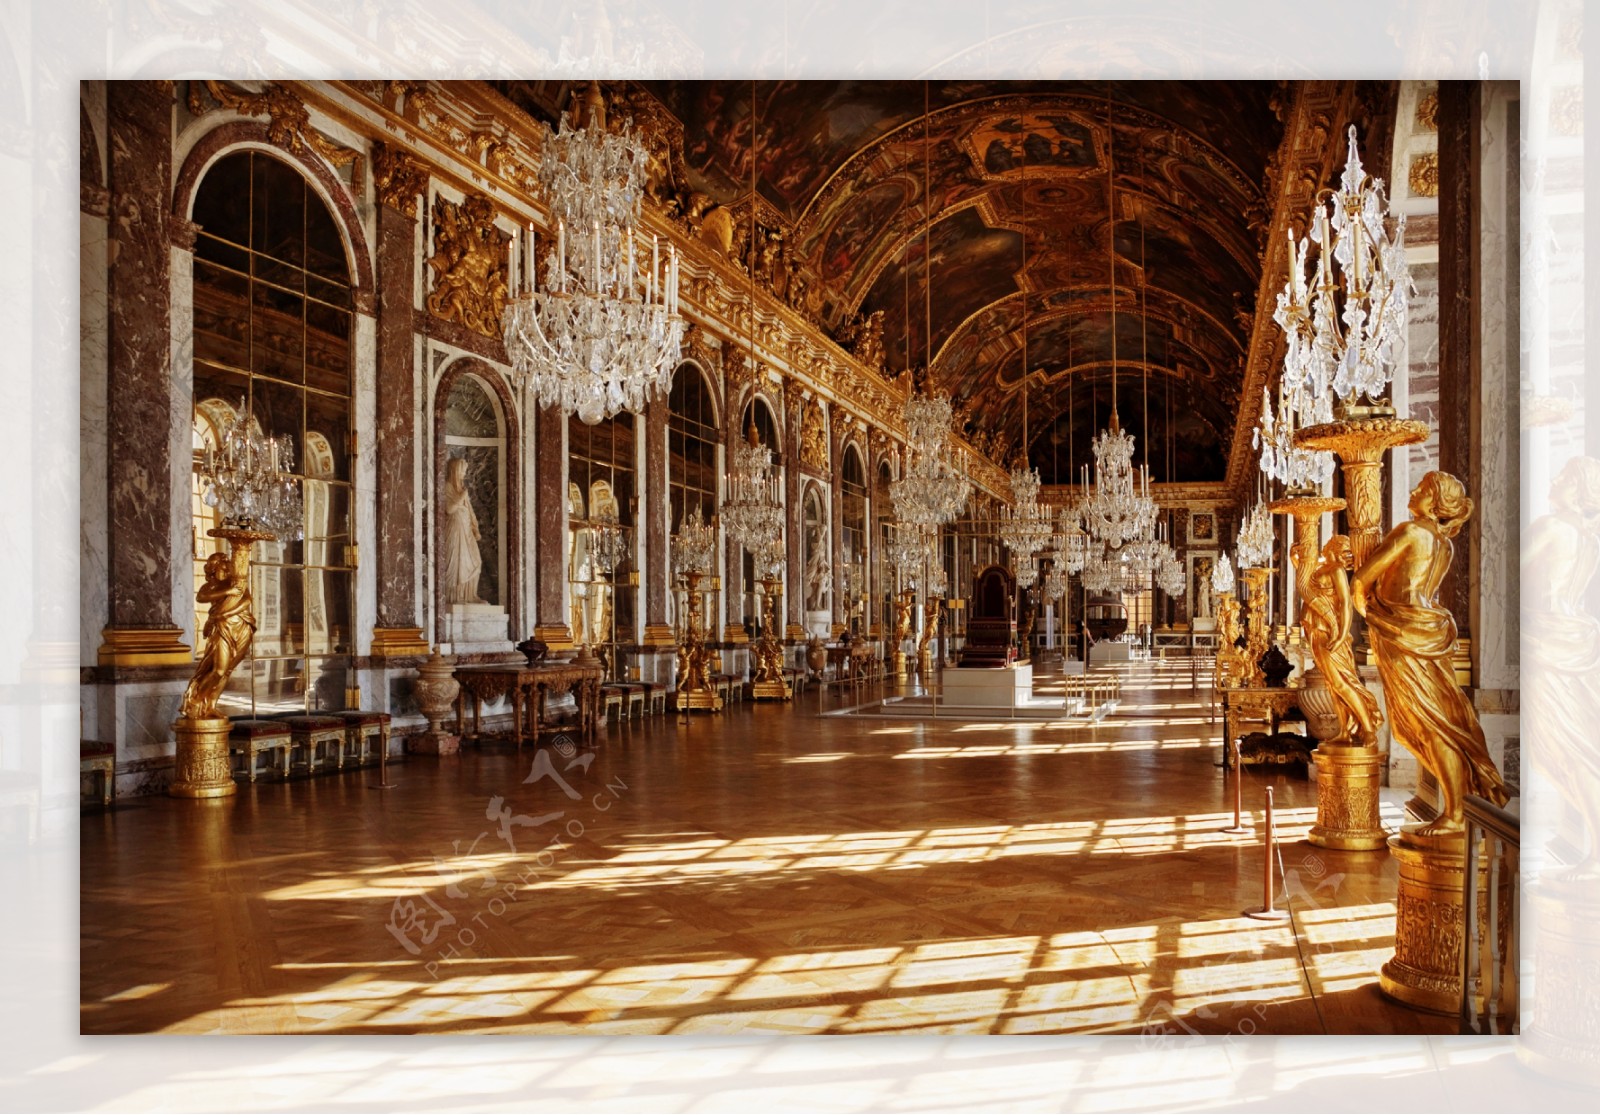 凡尔赛宫殿大厅内景